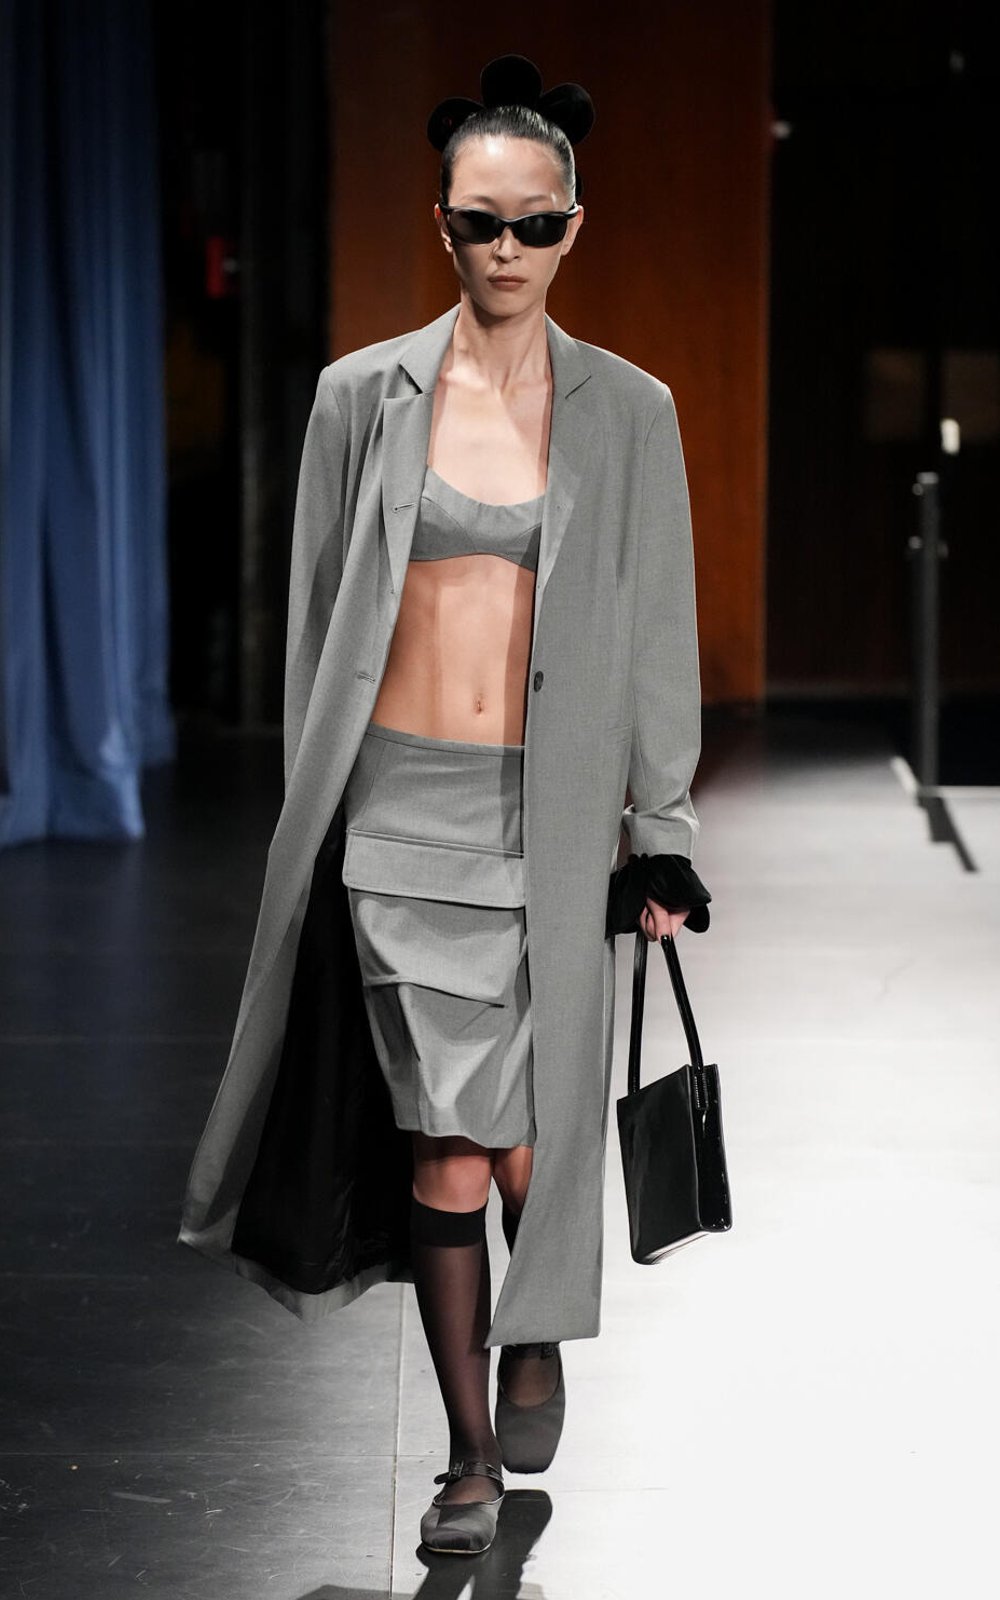 Sandy Liang - Semana de Moda de Nova Iorque - NYFW - fashion - New York Fashion Week - https://stealthelook.com.br